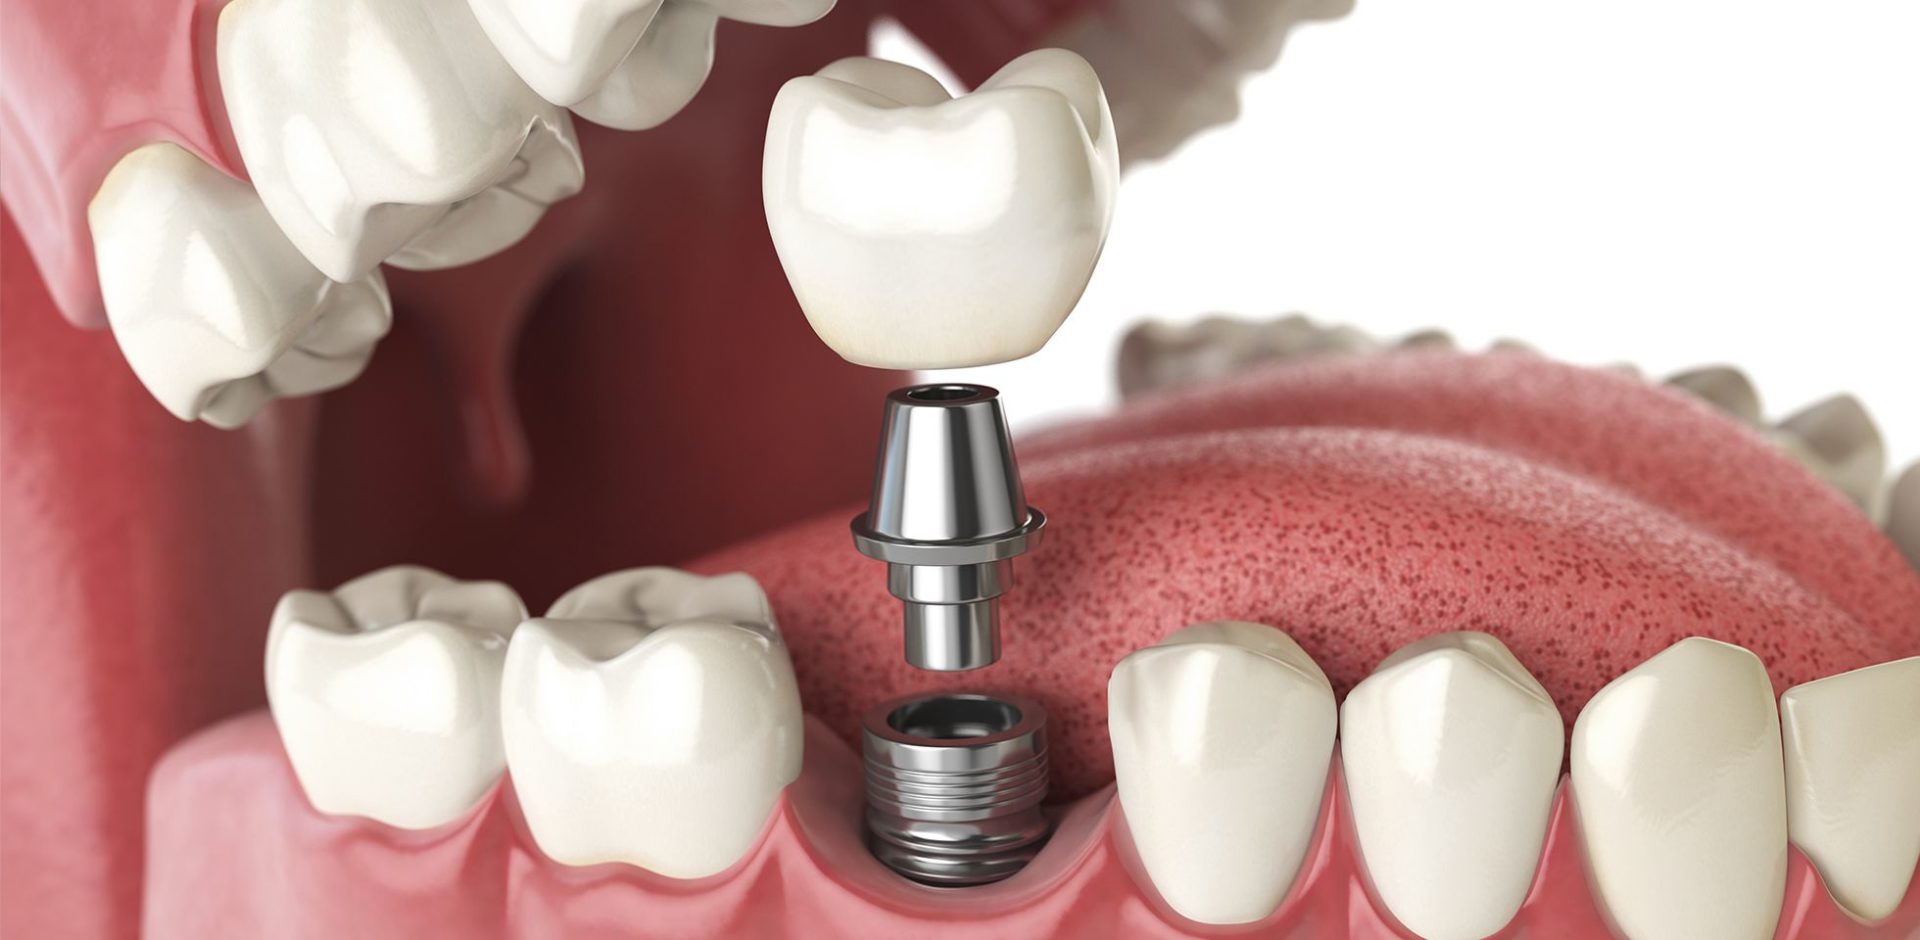 Implantes dentales, una solución de larga duración para mejorar tu salud